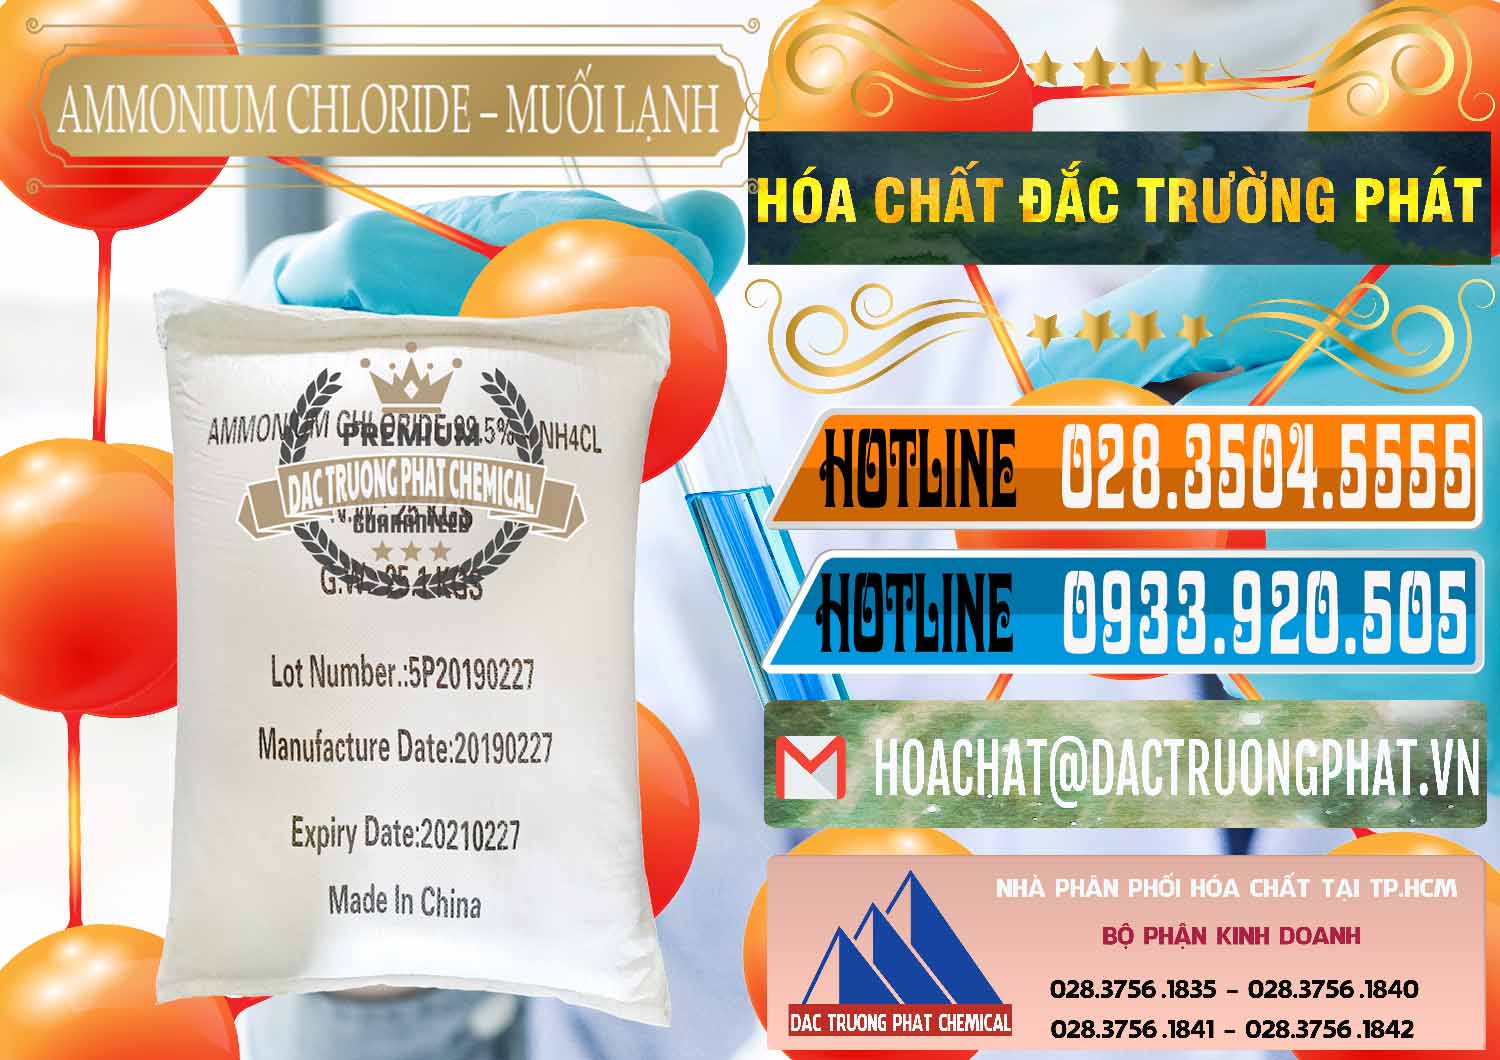 Cty cung cấp & bán Ammonium Chloride - Muối Lạnh NH4CL Trung Quốc China - 0021 - Công ty bán & phân phối hóa chất tại TP.HCM - stmp.net